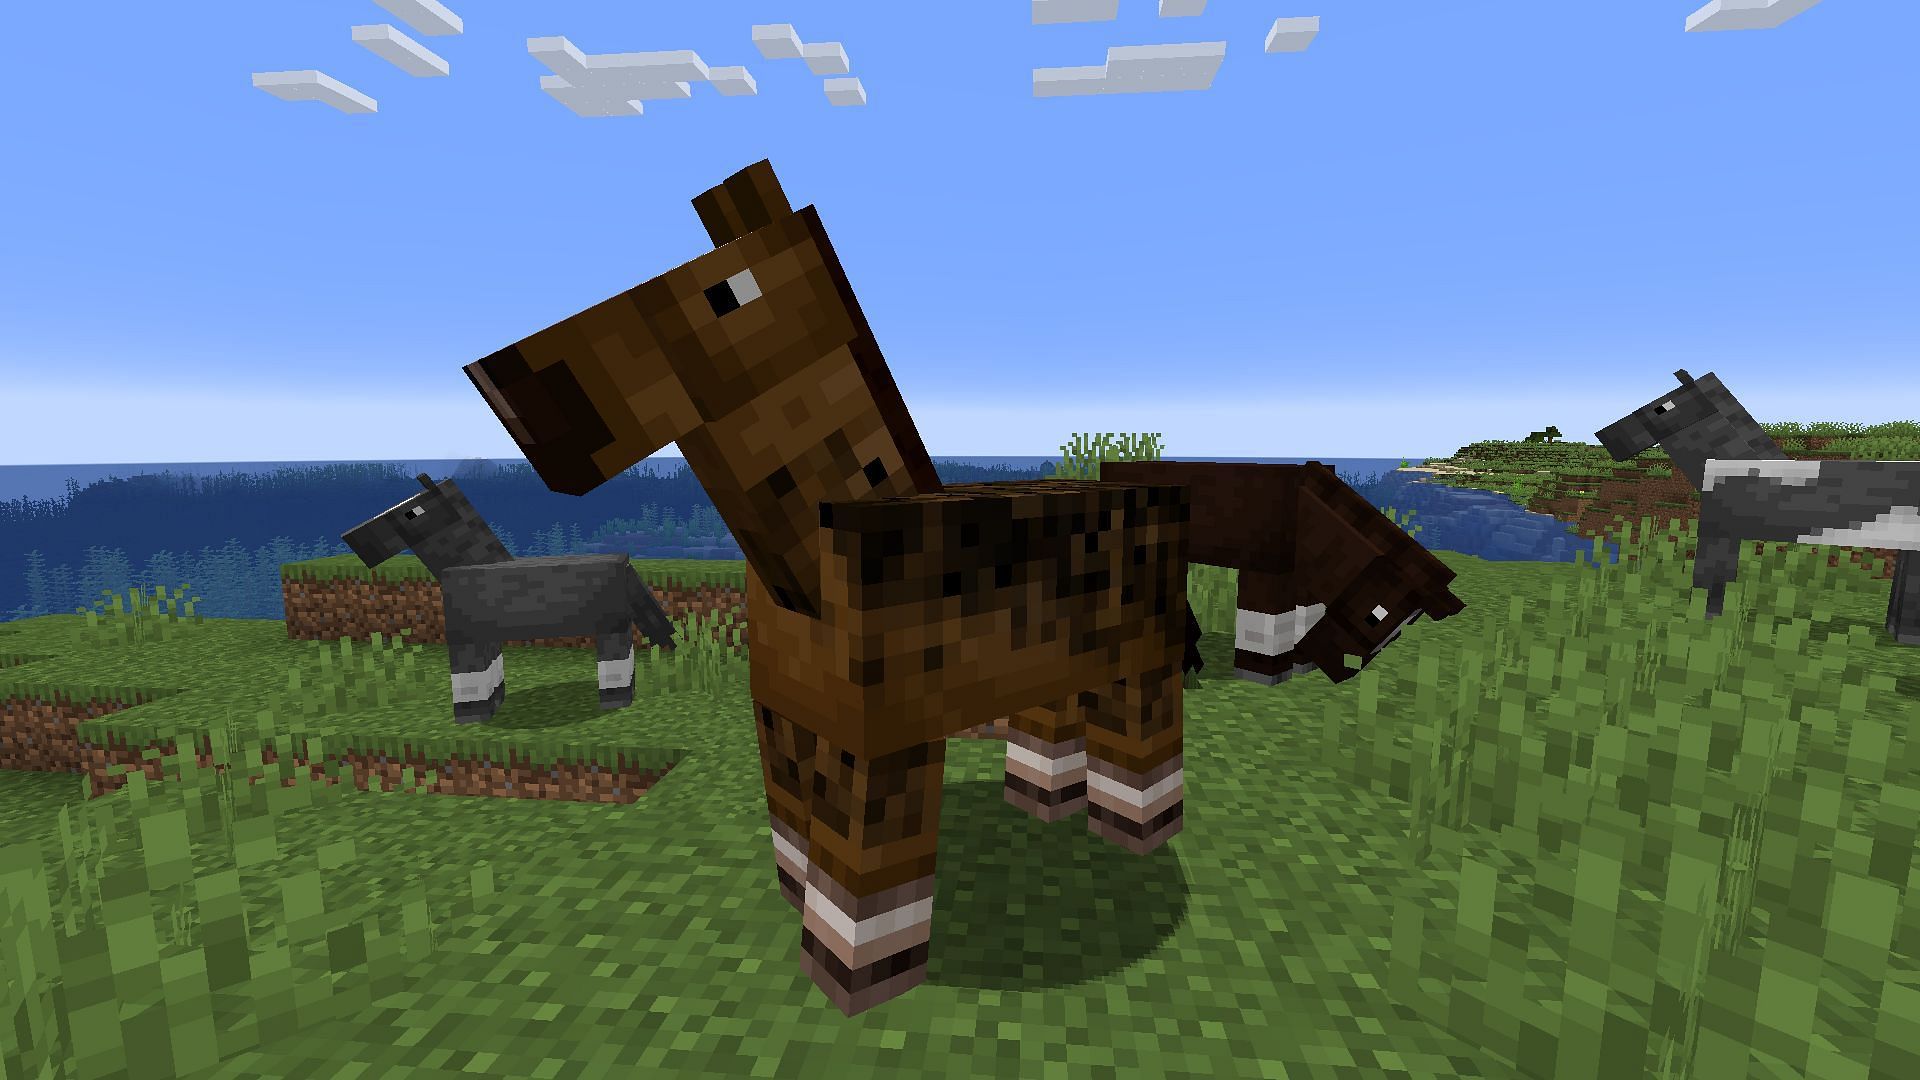 A horse up close. (Image via Minecraft)